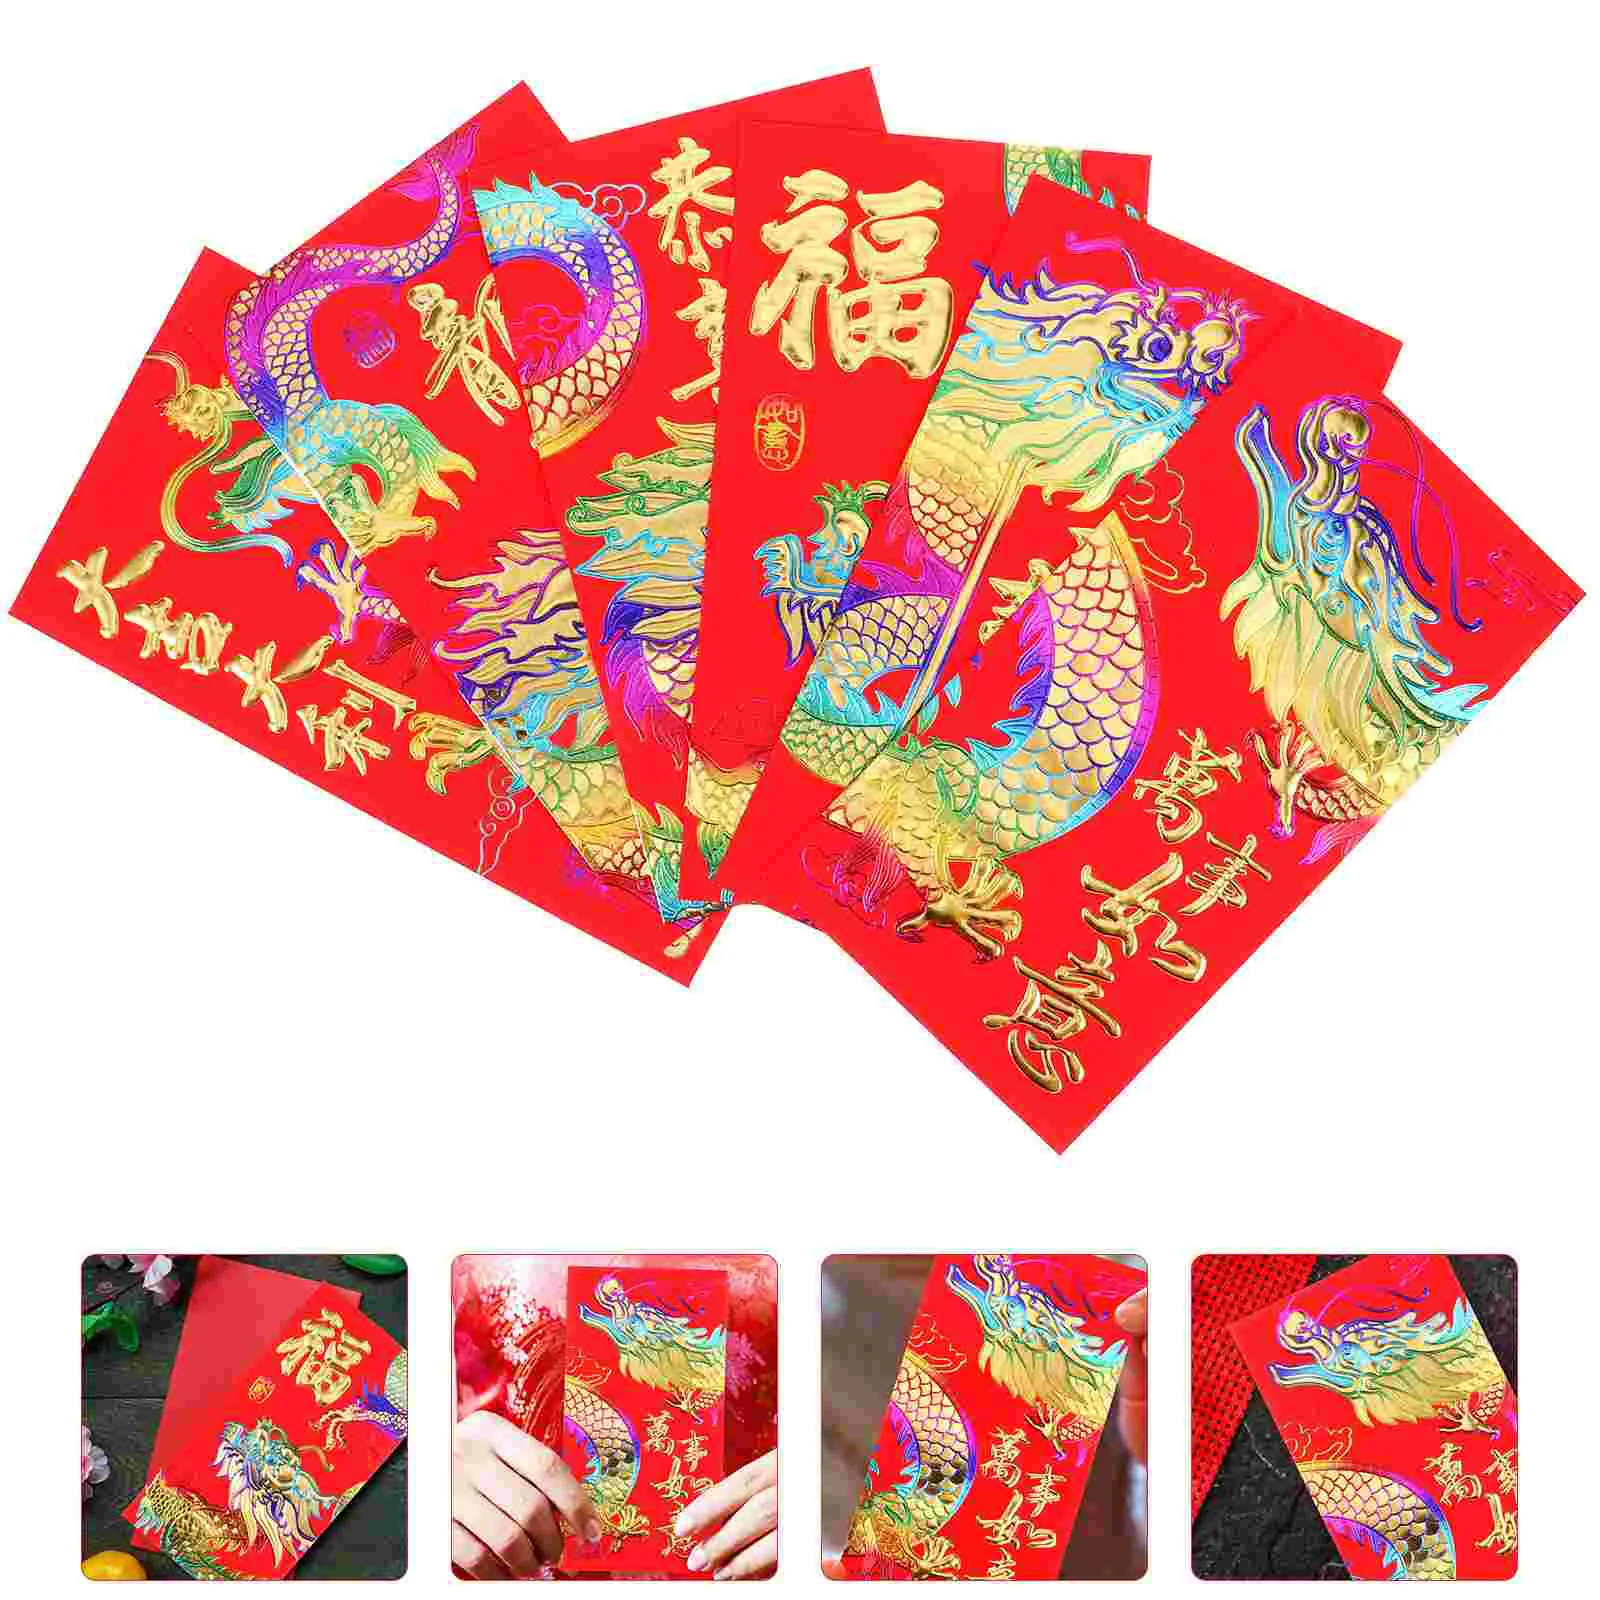 Креативные красные конверты Хунбао, Китайский Новый Год, День Рождения, Женитьба, Красный Подарочный конверт, Год Дракона, Удача, Денежные Конверты